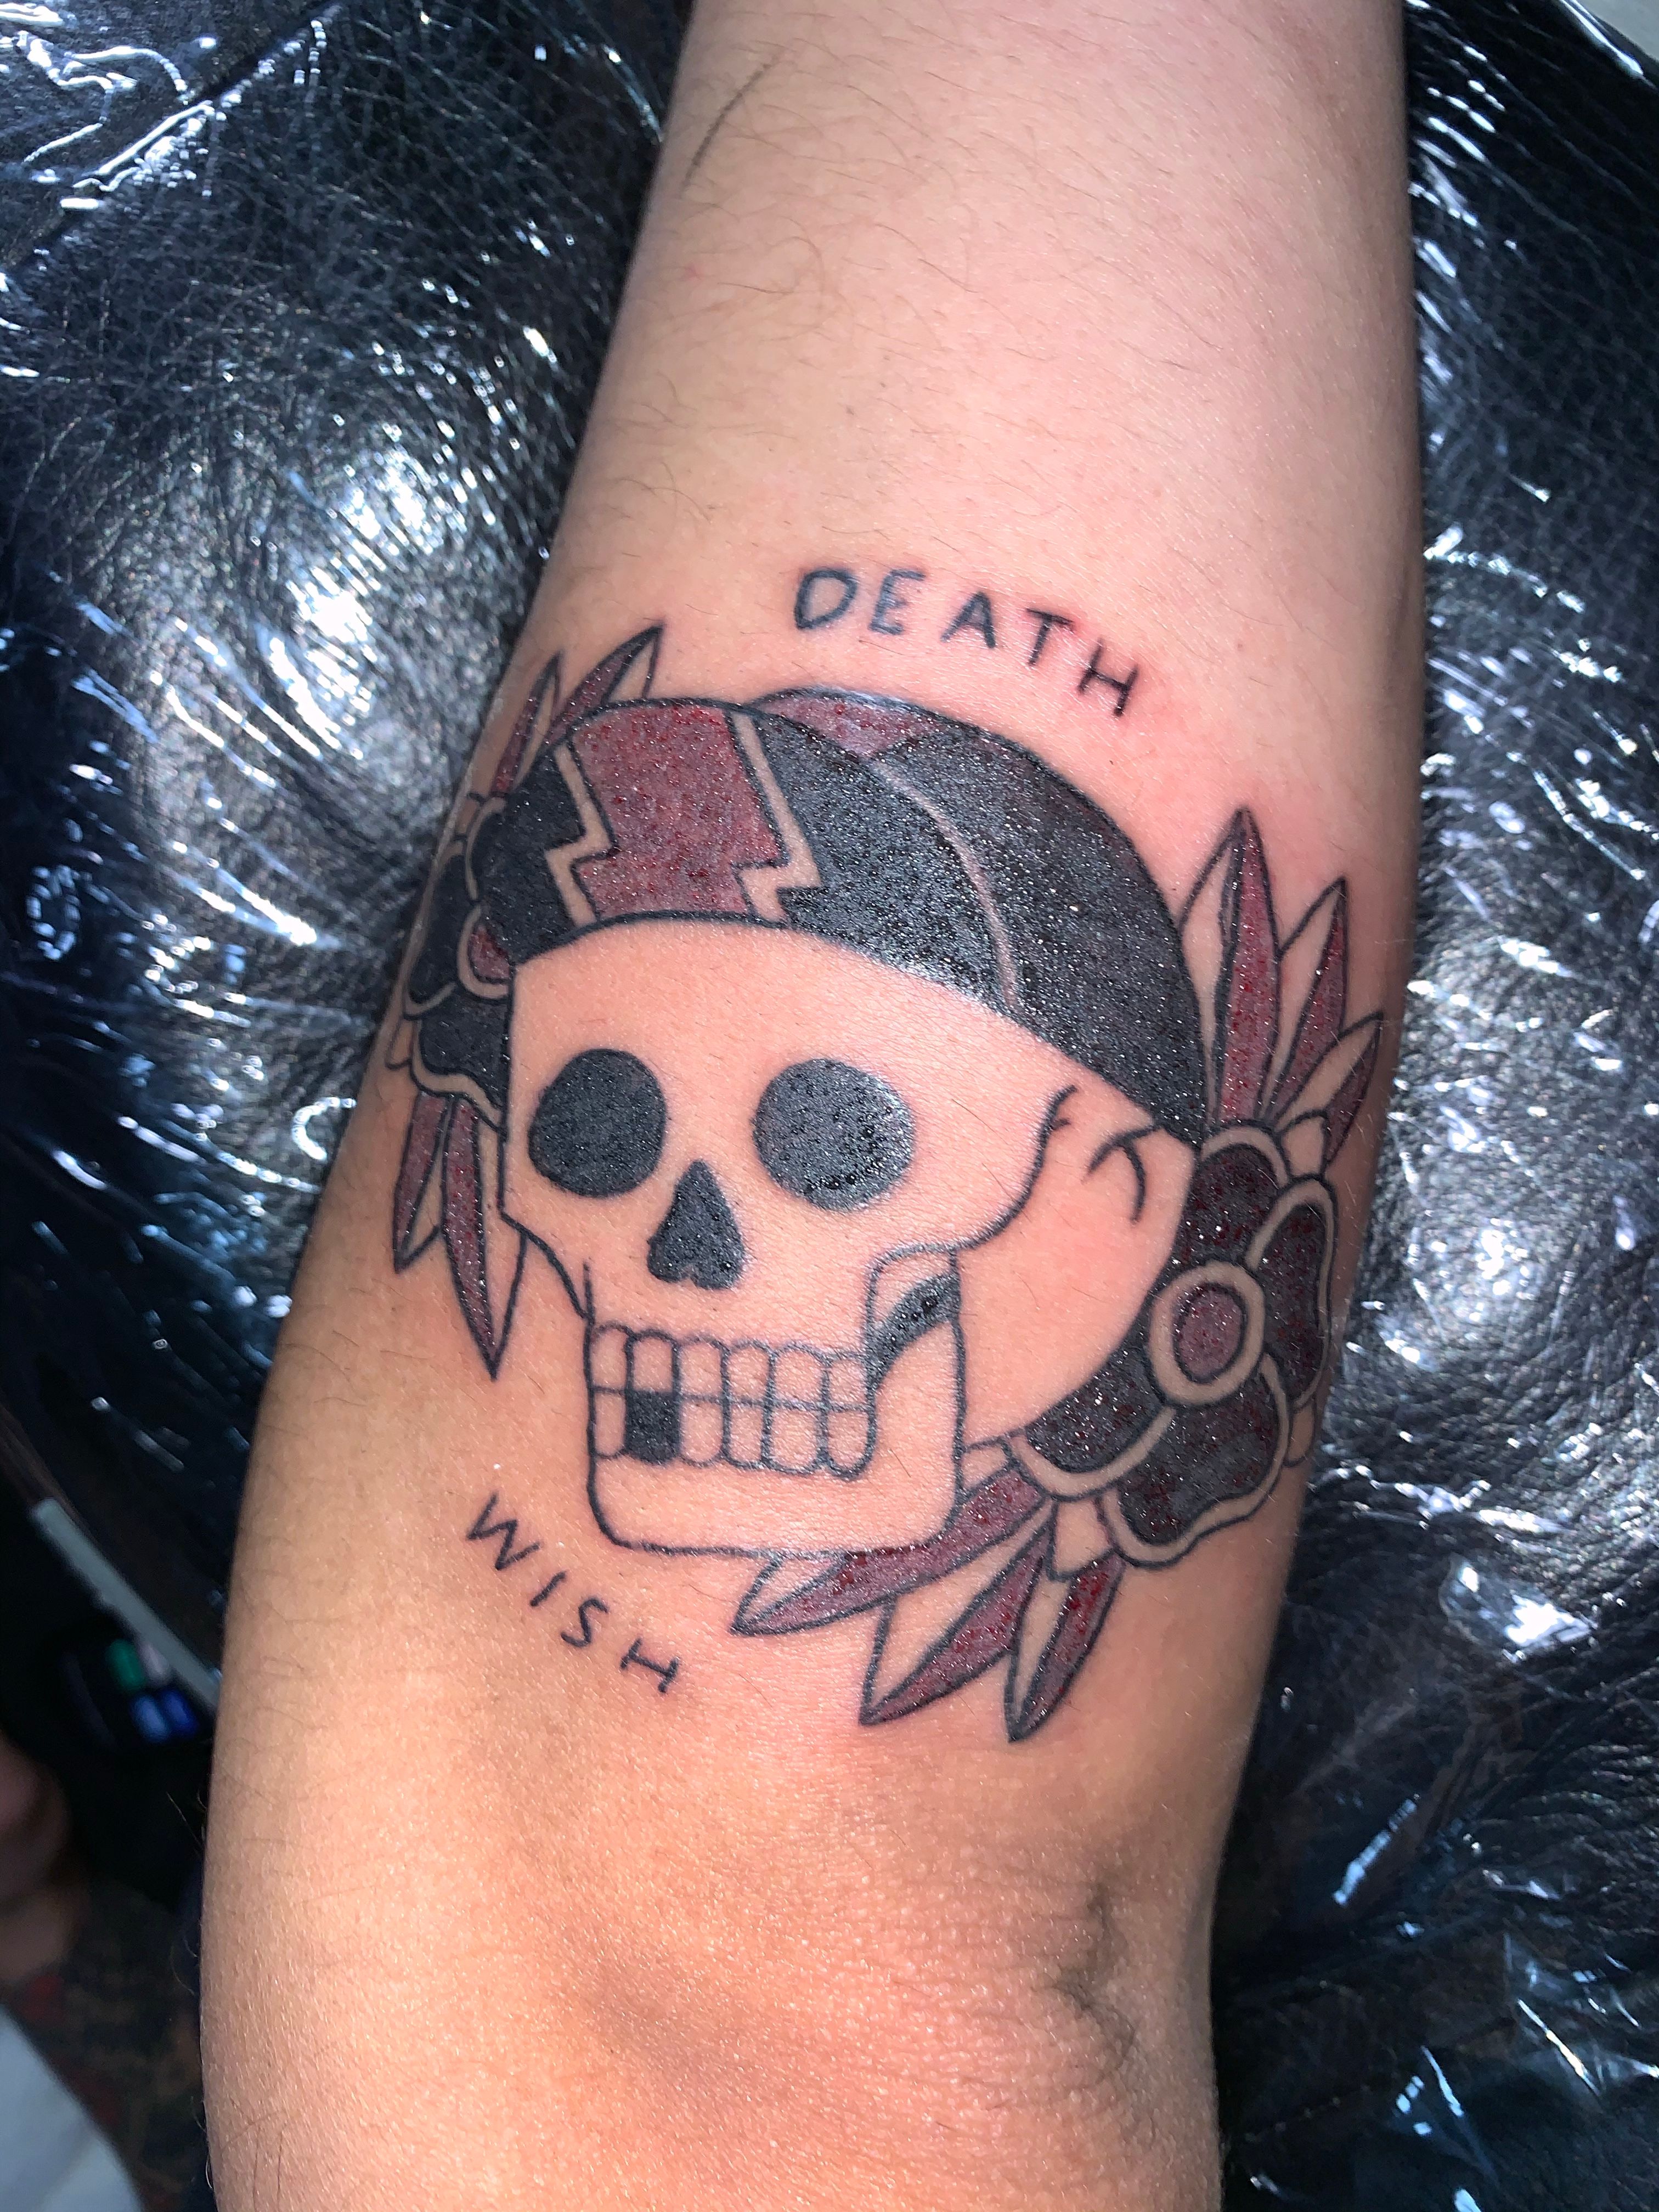 deathwish tattoo i did :) : r/MyChemicalRomance